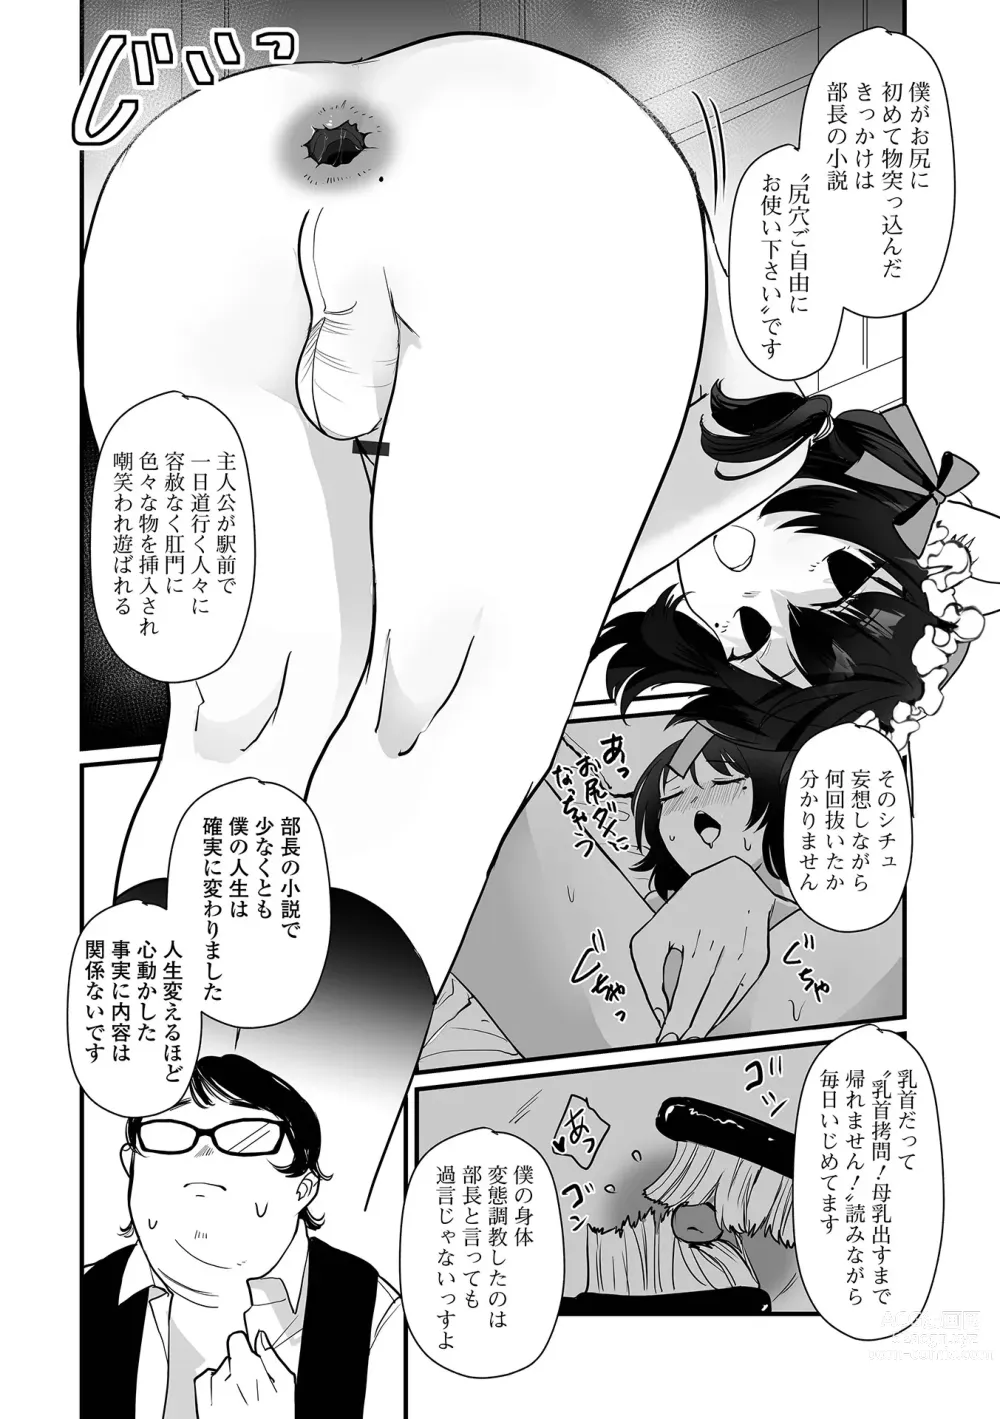 Page 16 of manga Gekkan Web Otoko no Ko-llection! S Vol. 95